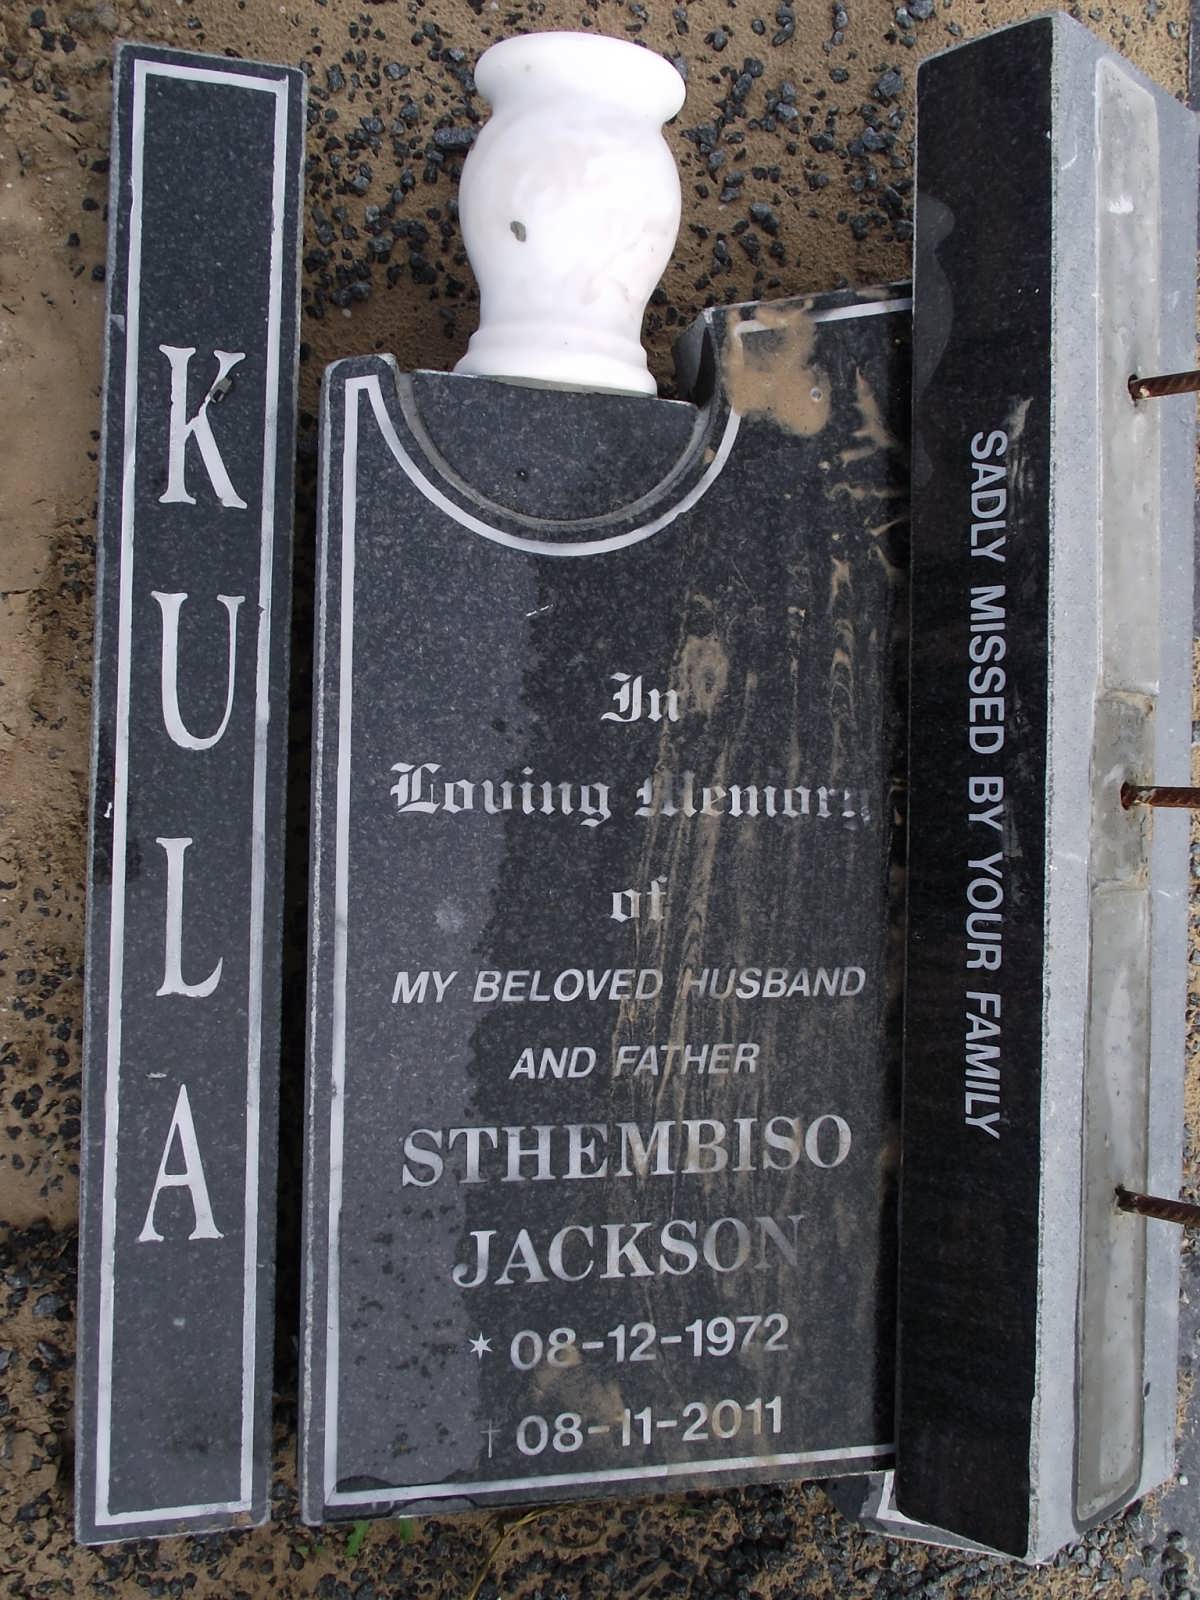 KULA Sthembiso Jackson 1972-2011